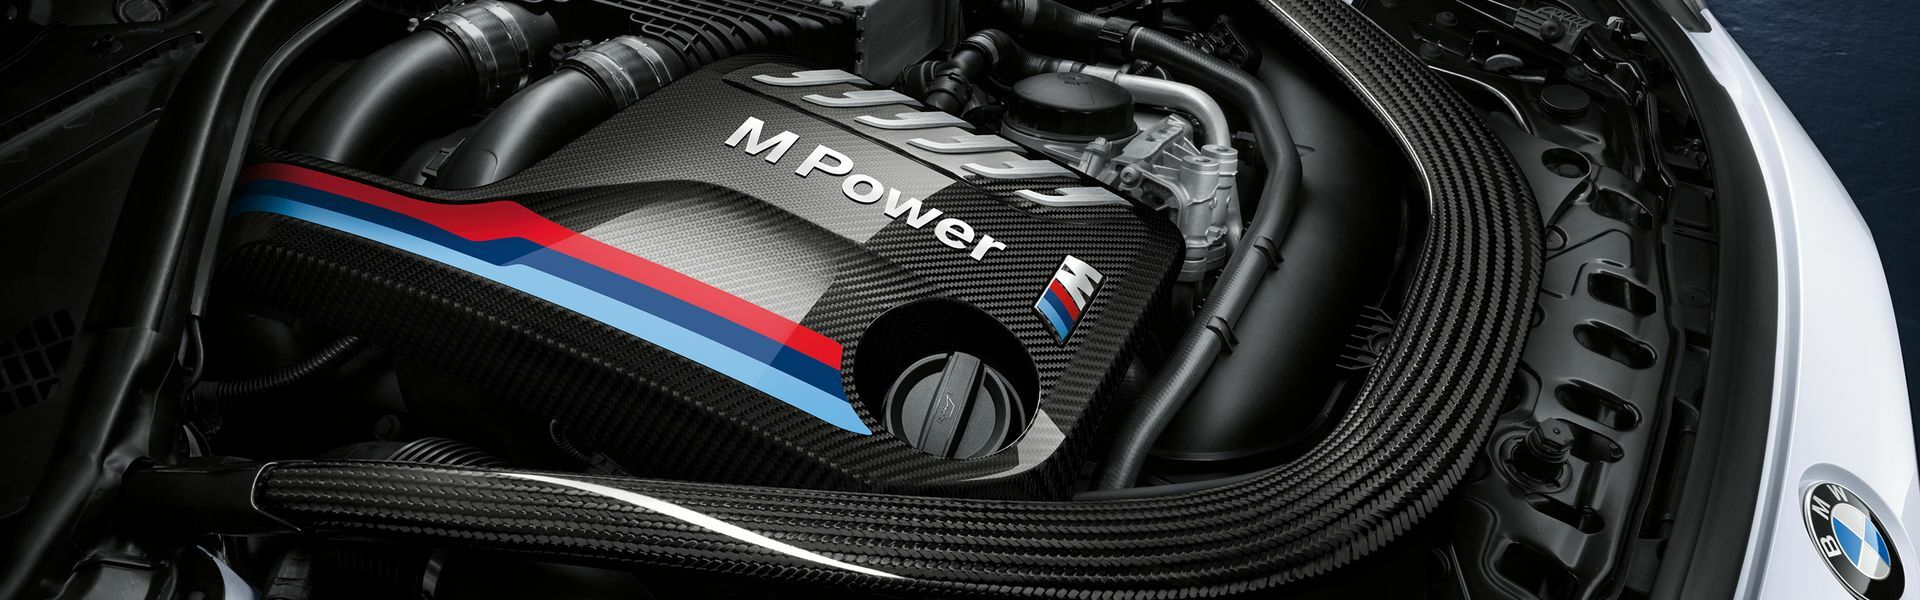 Zvýšení výkonu/ Softwarové úpravy/ Drobné performance díly pro automobil BMW 335i E90 E91